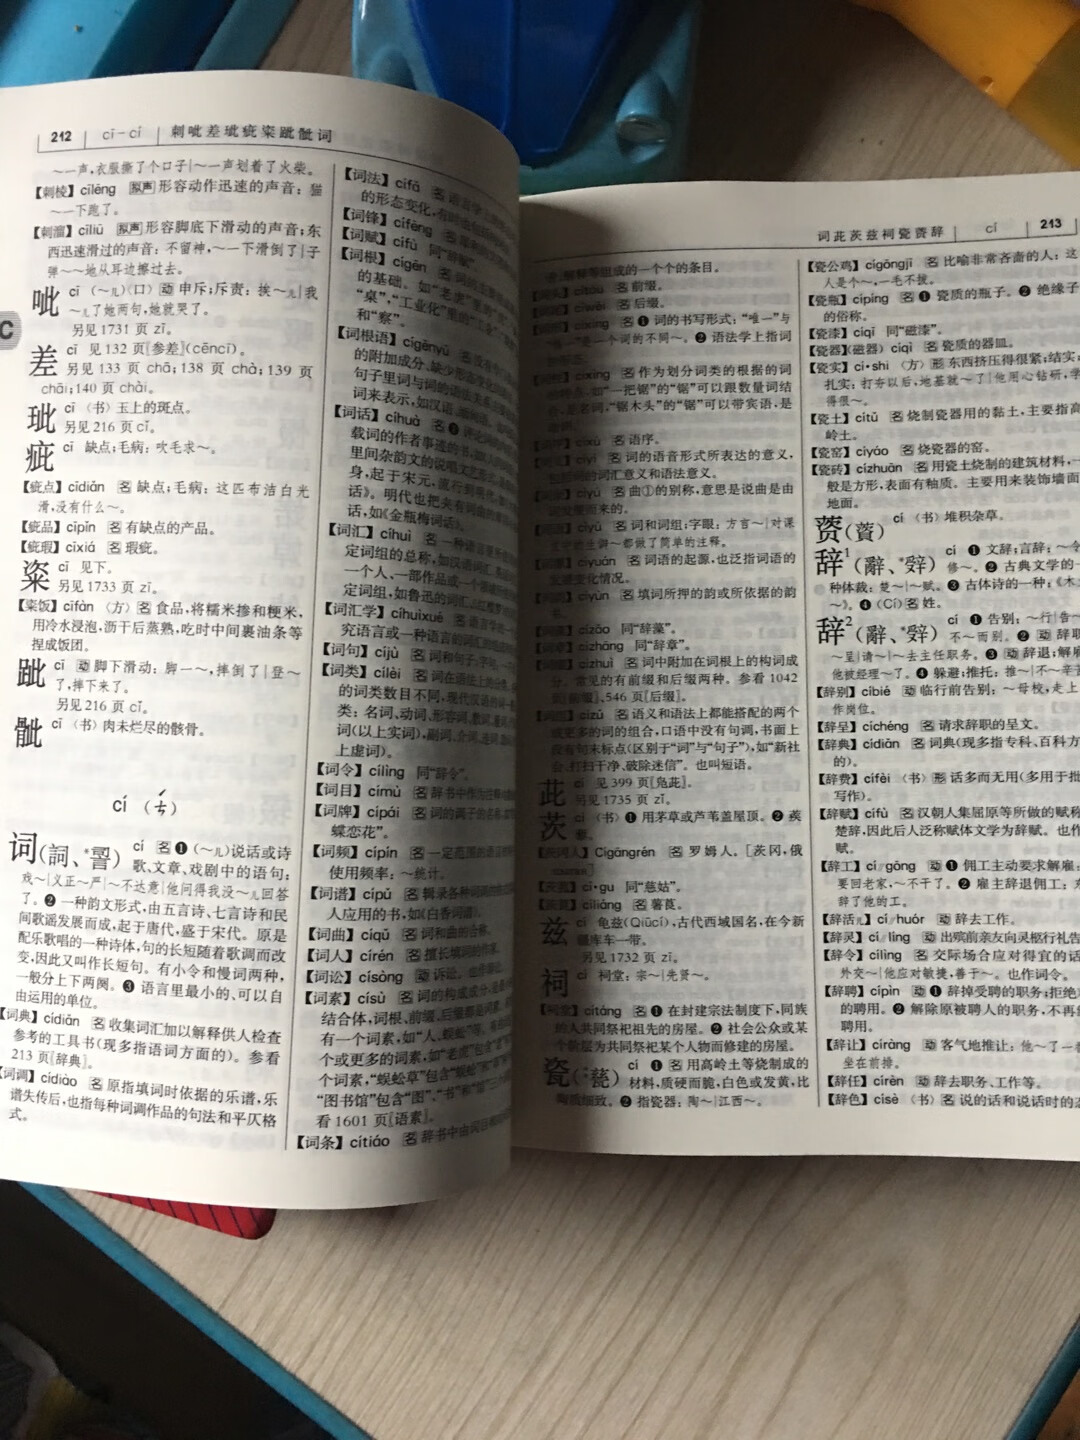 老师指定的版本，大词典，很大一本，看着还不错。